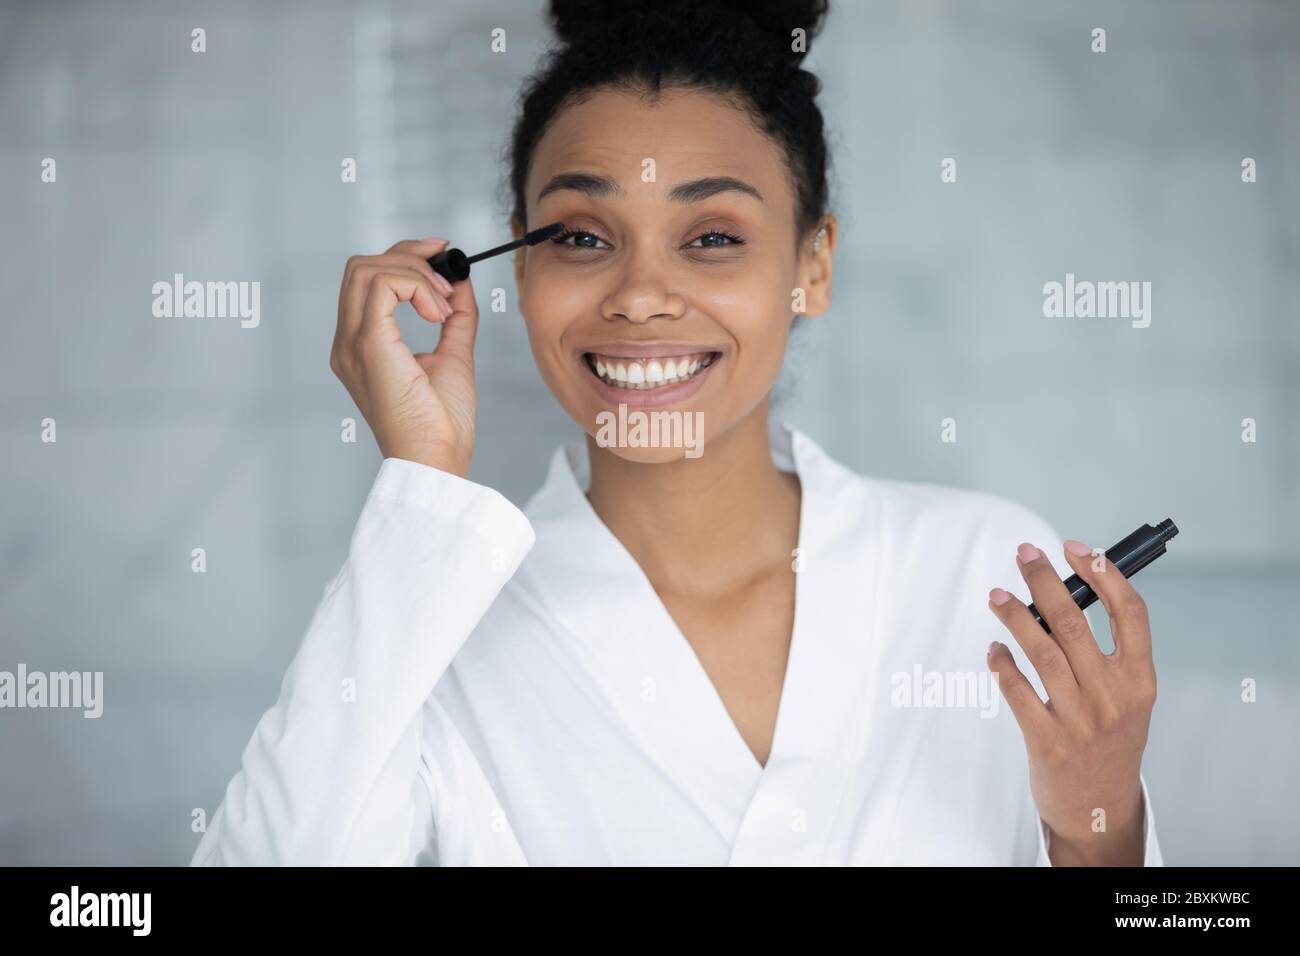 Portrait de tête souriant femme afro-américaine appliquant une mascara noire Banque D'Images